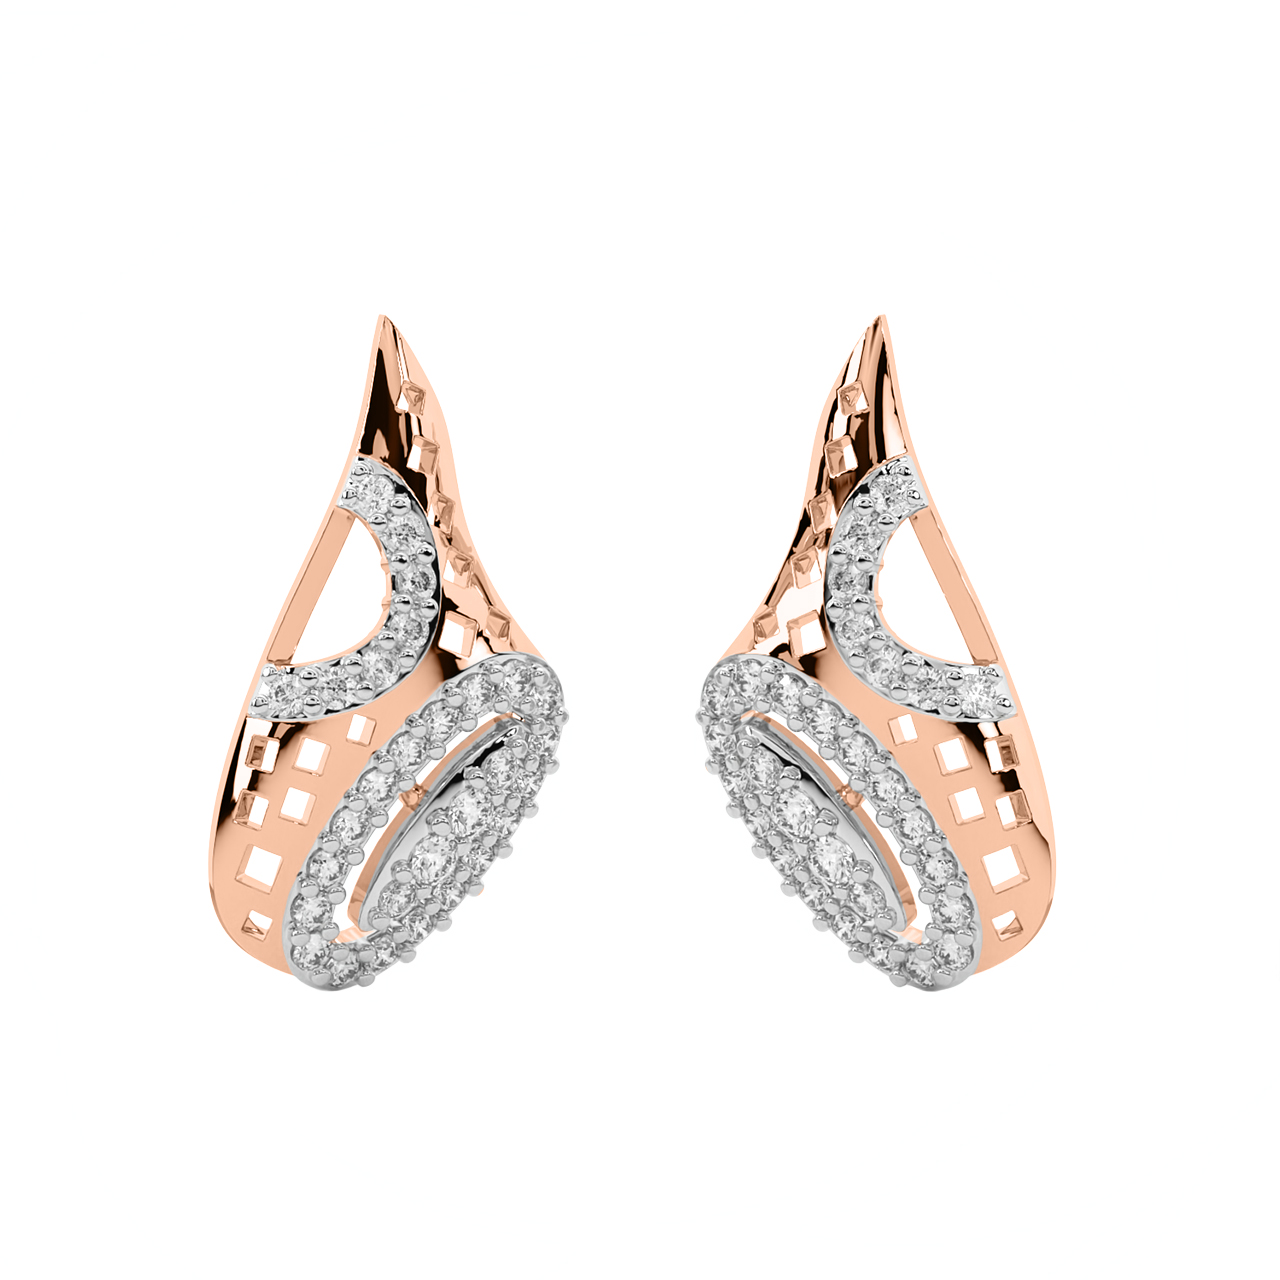 Kayla Round Diamond Stud Earrings